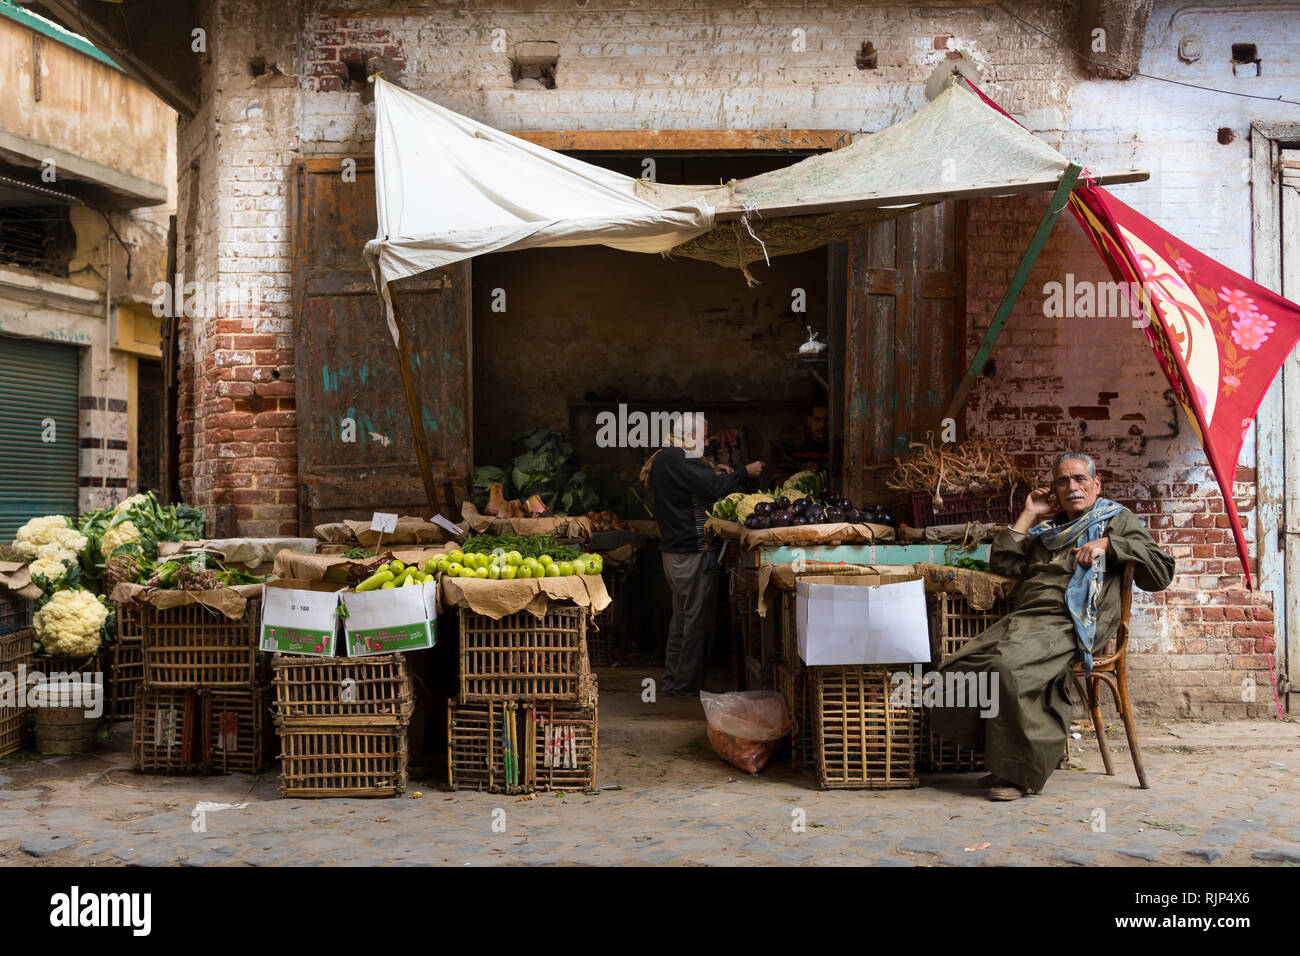 Gli acquirenti locali in un negozio di alimentari a Rasheed (Egitto) souq marketplace vendere cavolfiori, melanzane e altri prodotti. Foto Stock